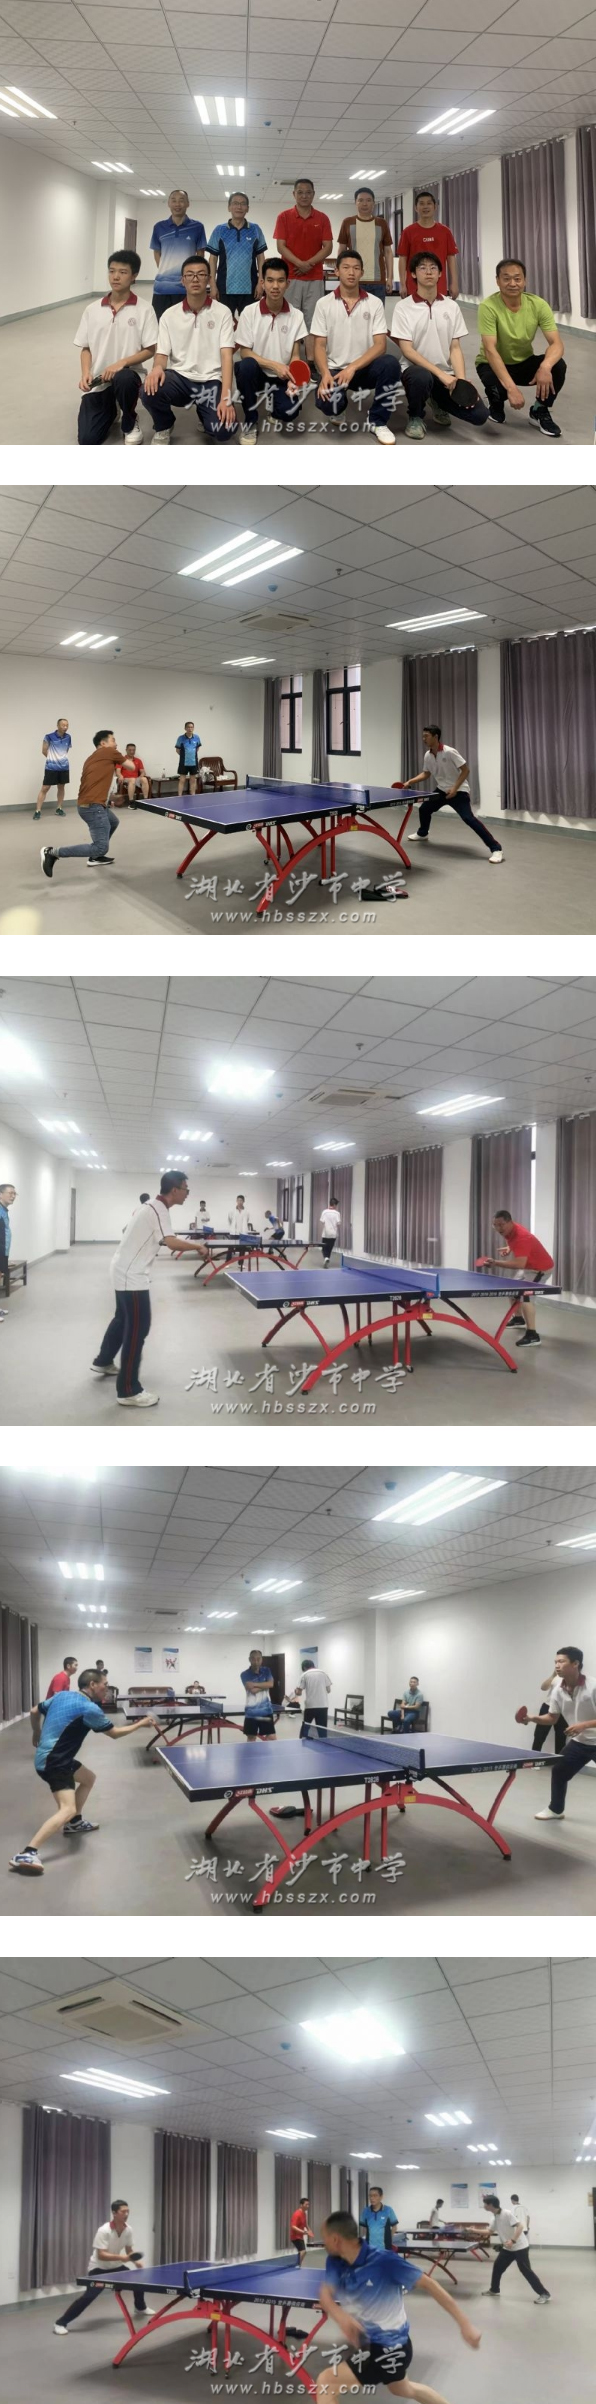 湖北省沙市中学举行师生兵乓球联谊赛